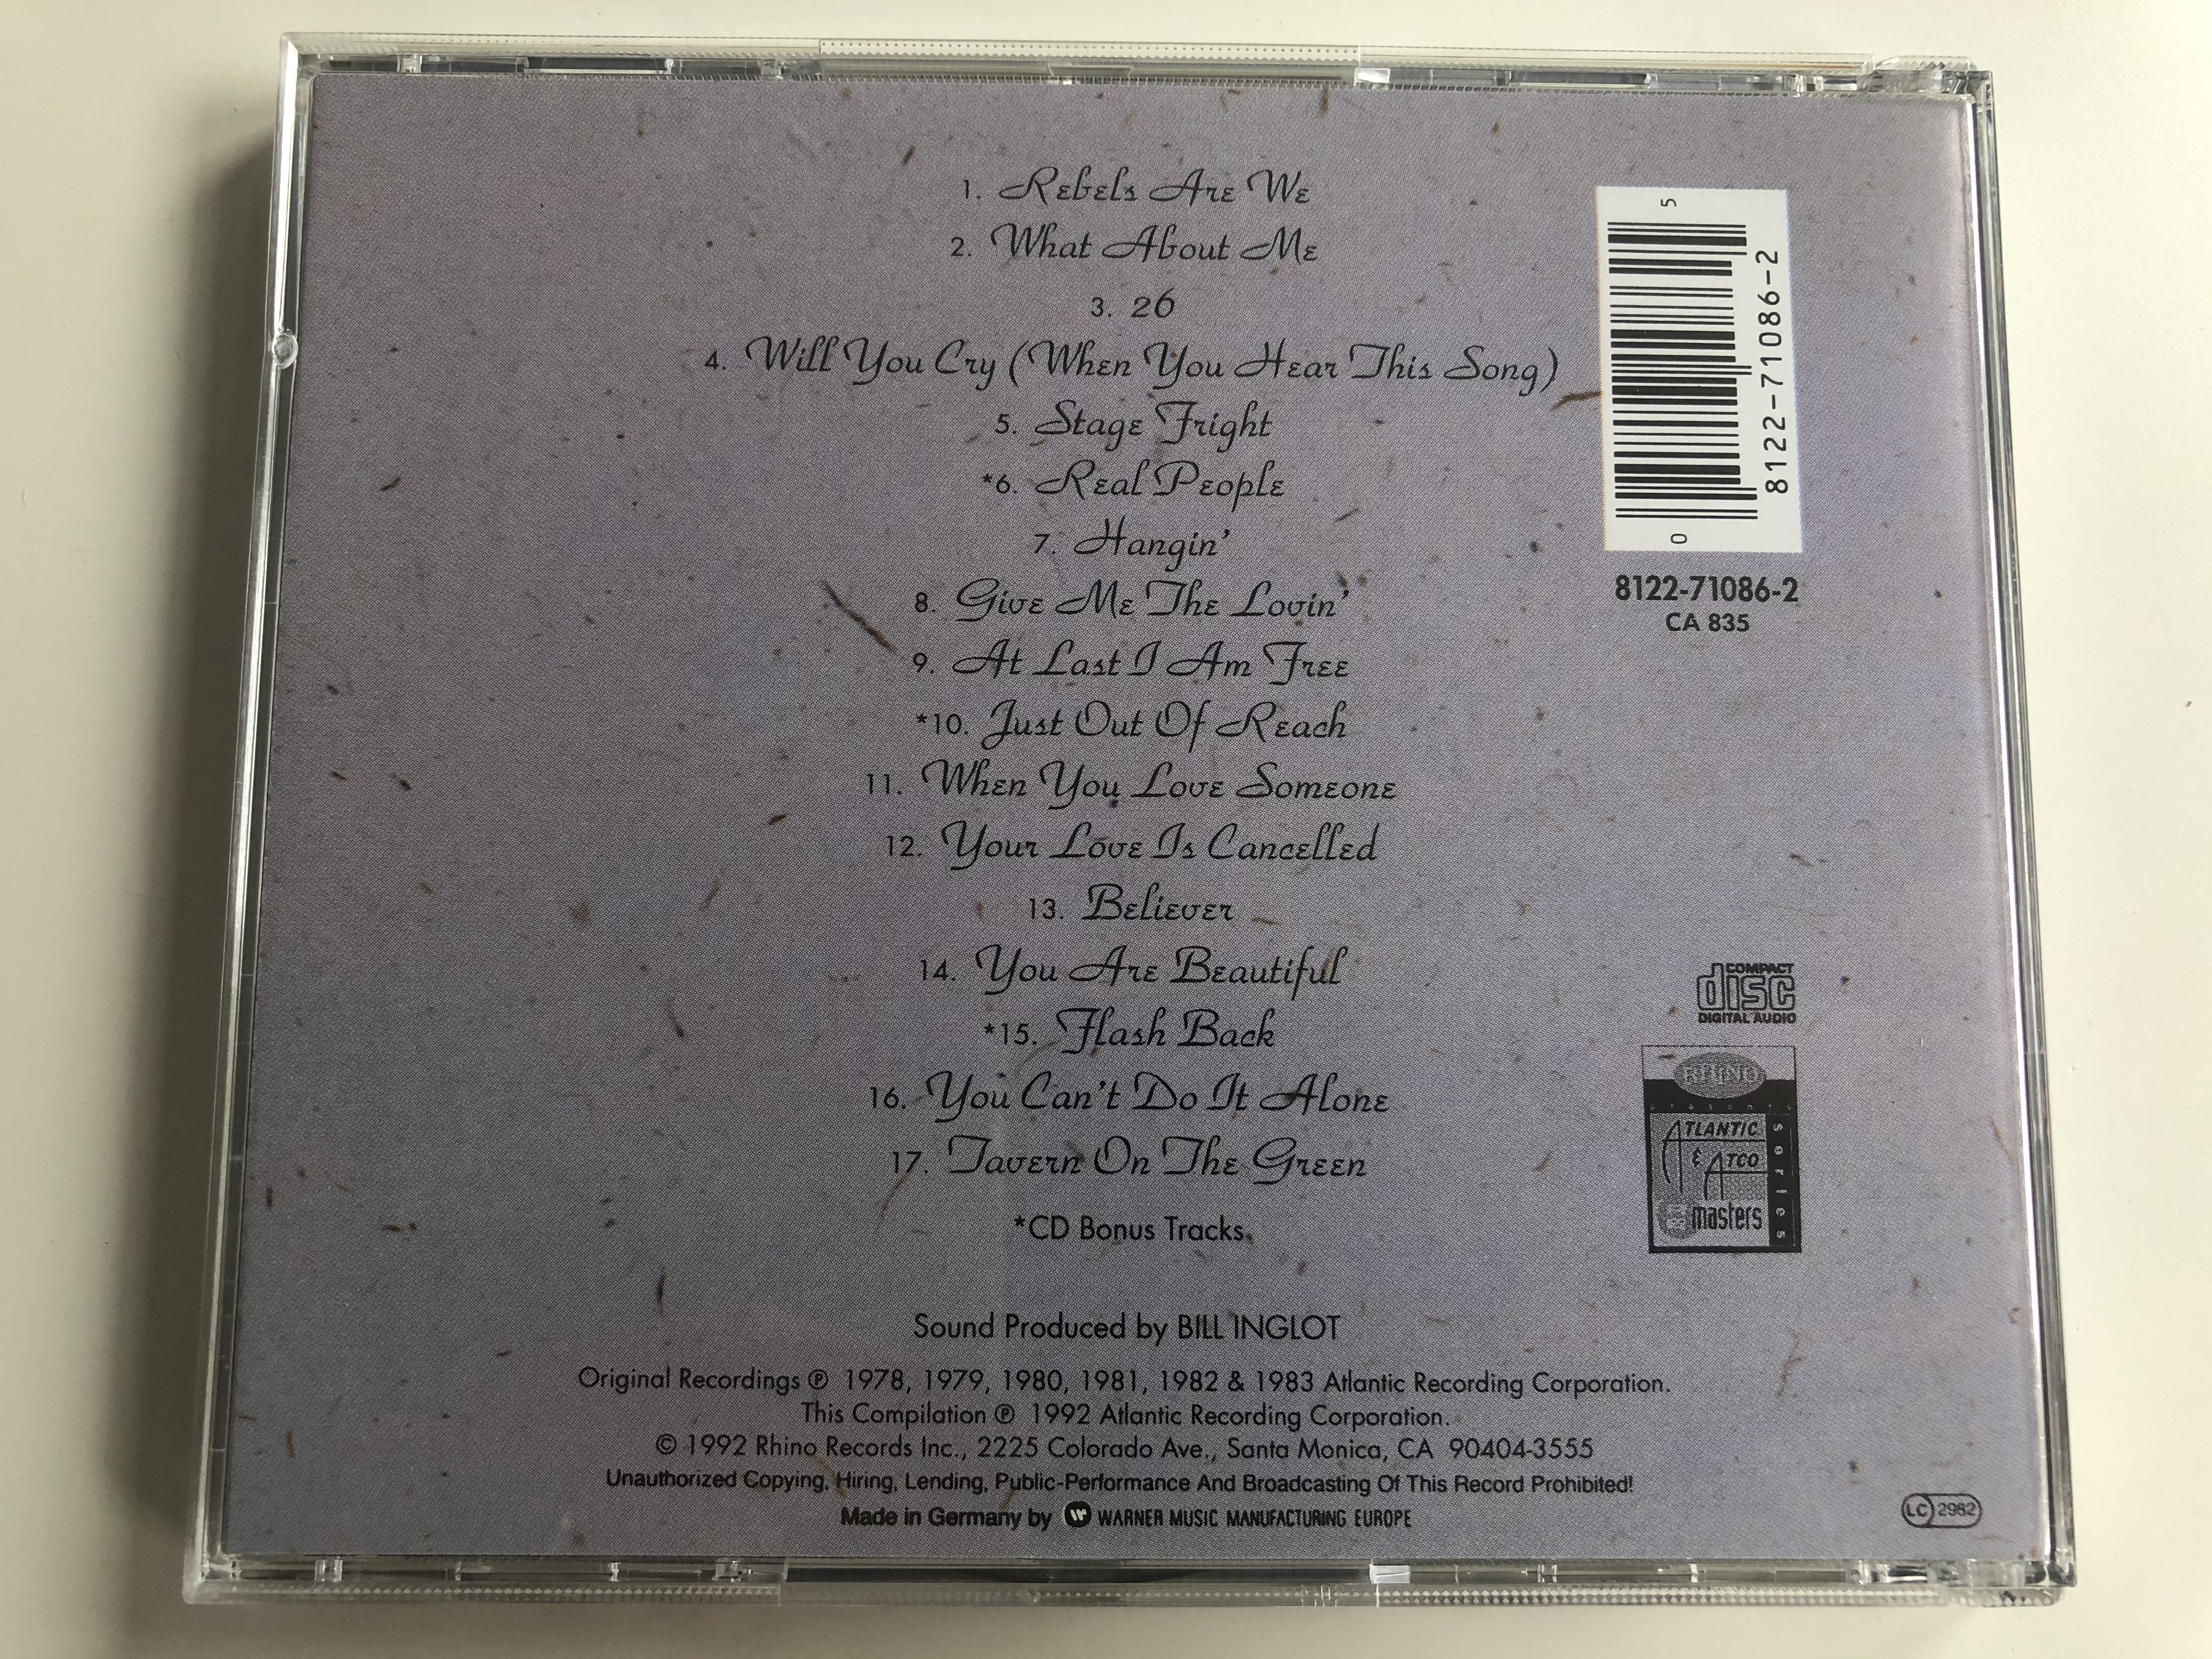 the-best-of-chic-volume-2-rhino-records-audio-cd-1992-8122-71086-2-7-.jpg